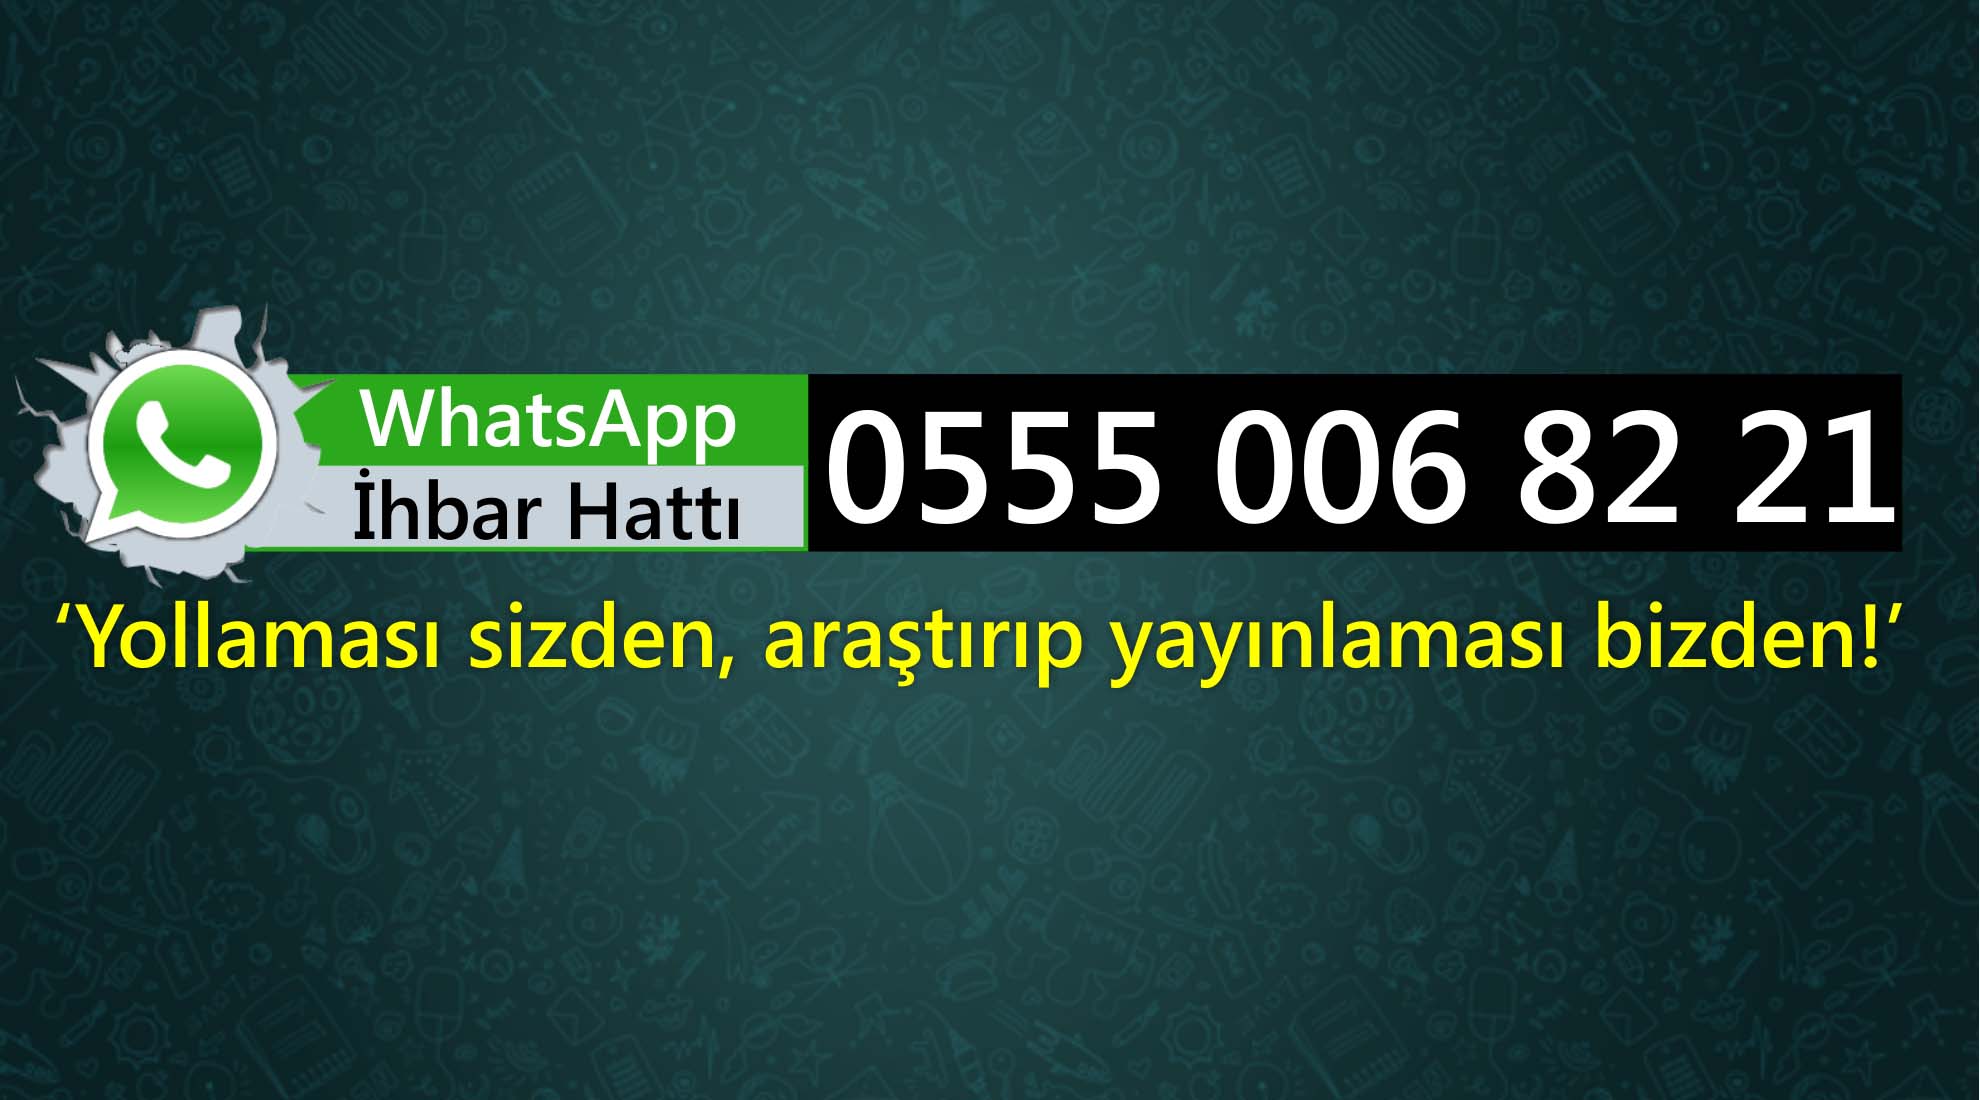 whatsapp-ihbar-hatti-bozuyuk1.jpg